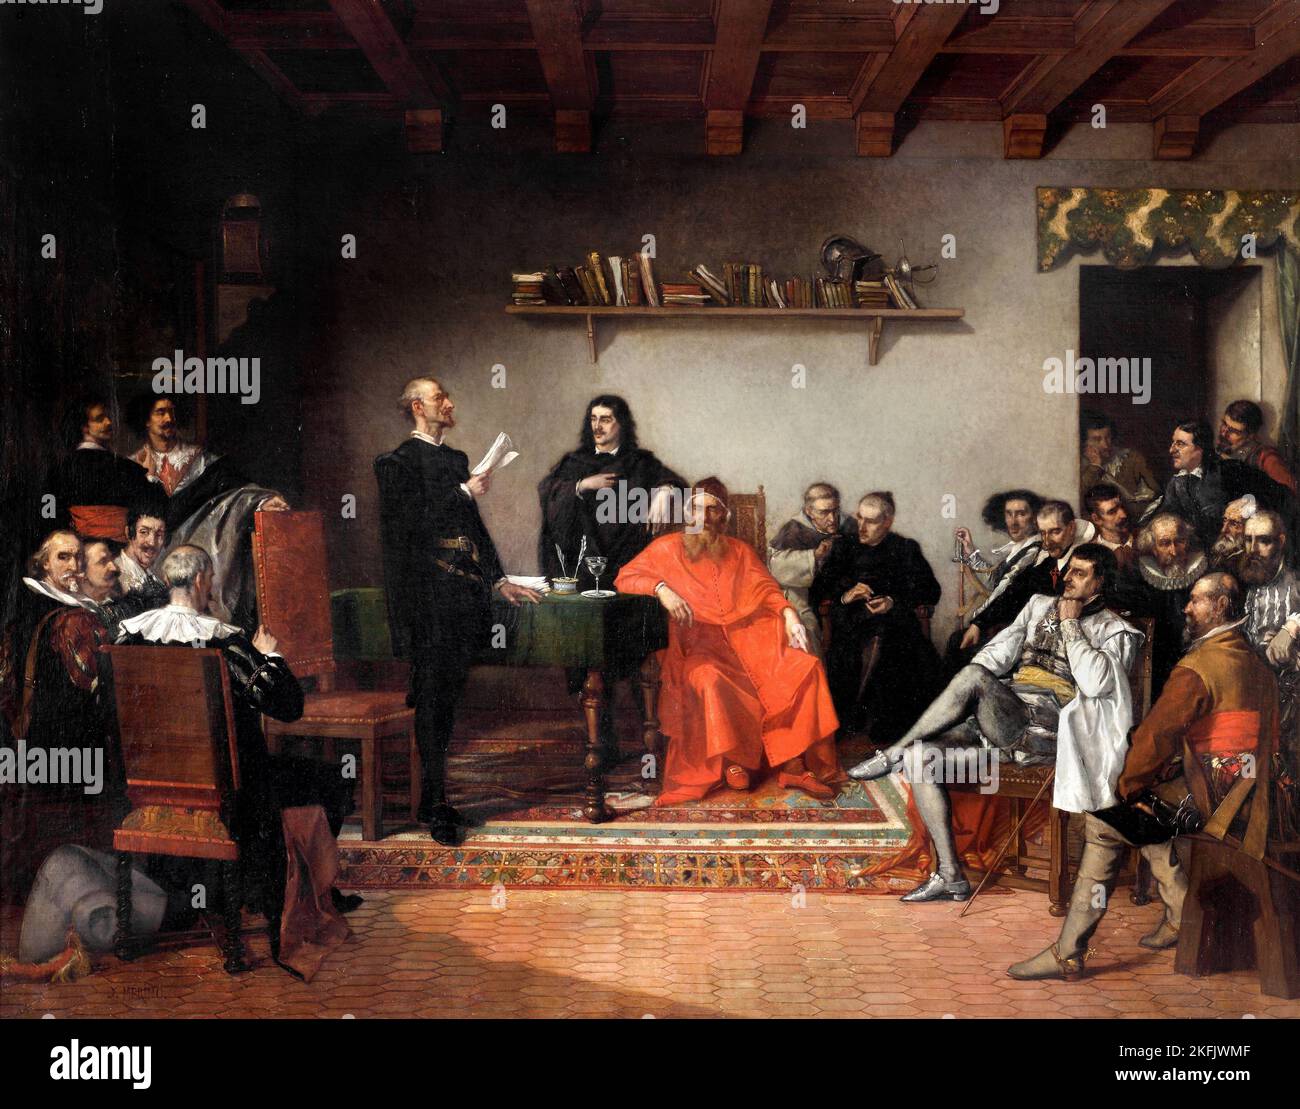 Ignacio Merino; Reading Don Quichotte; 1861; huile sur toile; Musée d'art de Lima (MALI), Lima, Pérou. Banque D'Images